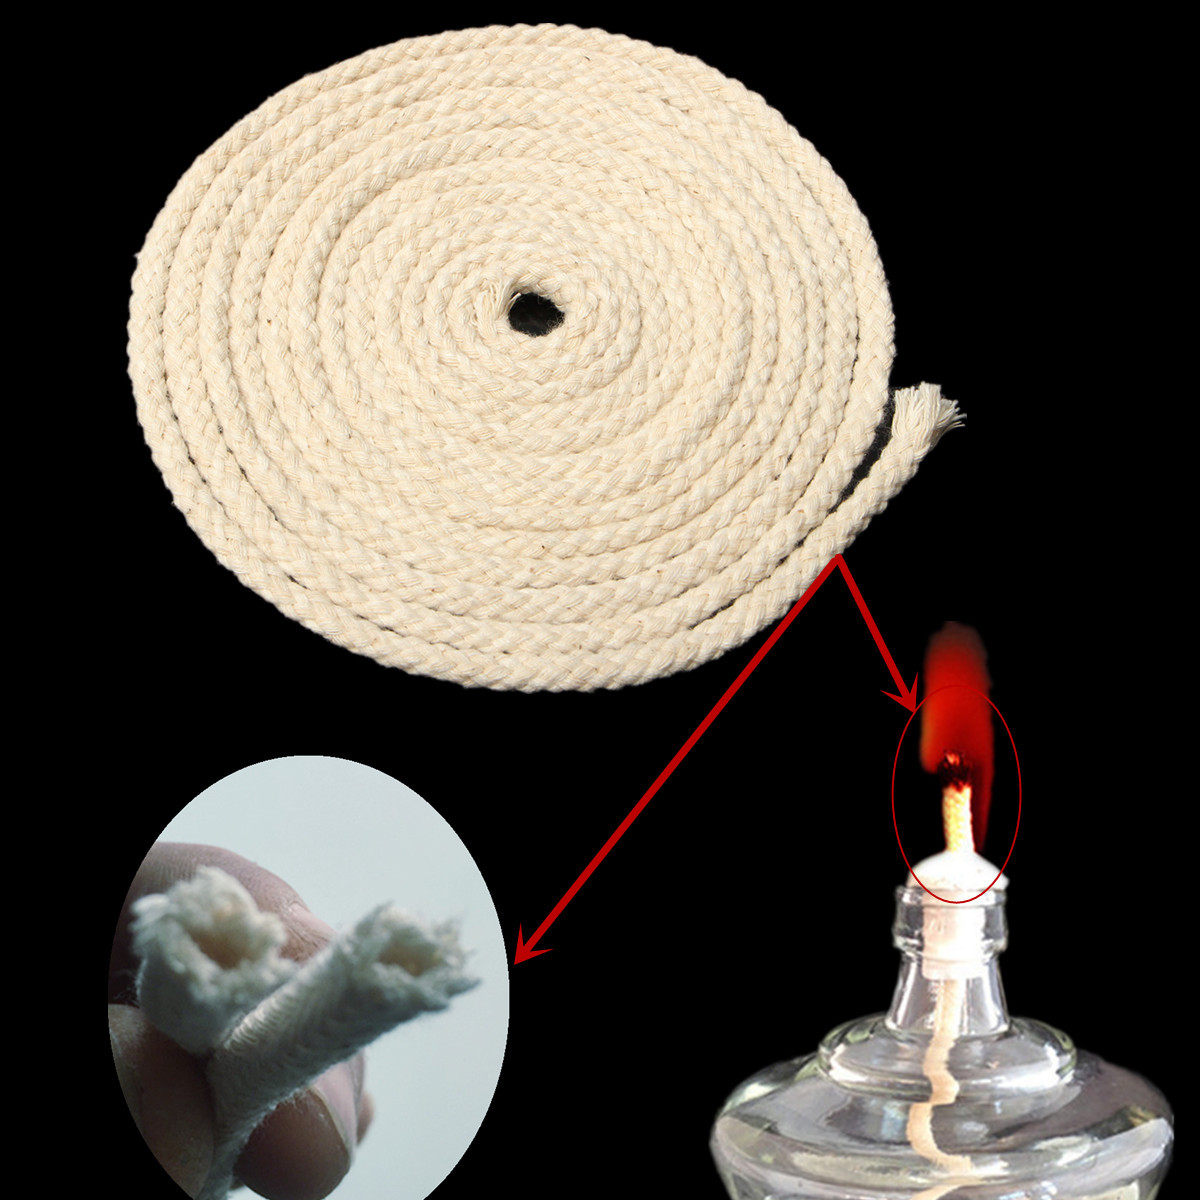 3m-Long-Diameter-6mm-Round-Cotton-Wick-Burner-for-Oil-Kerosene-Alcohol-Lamp-1189005-1